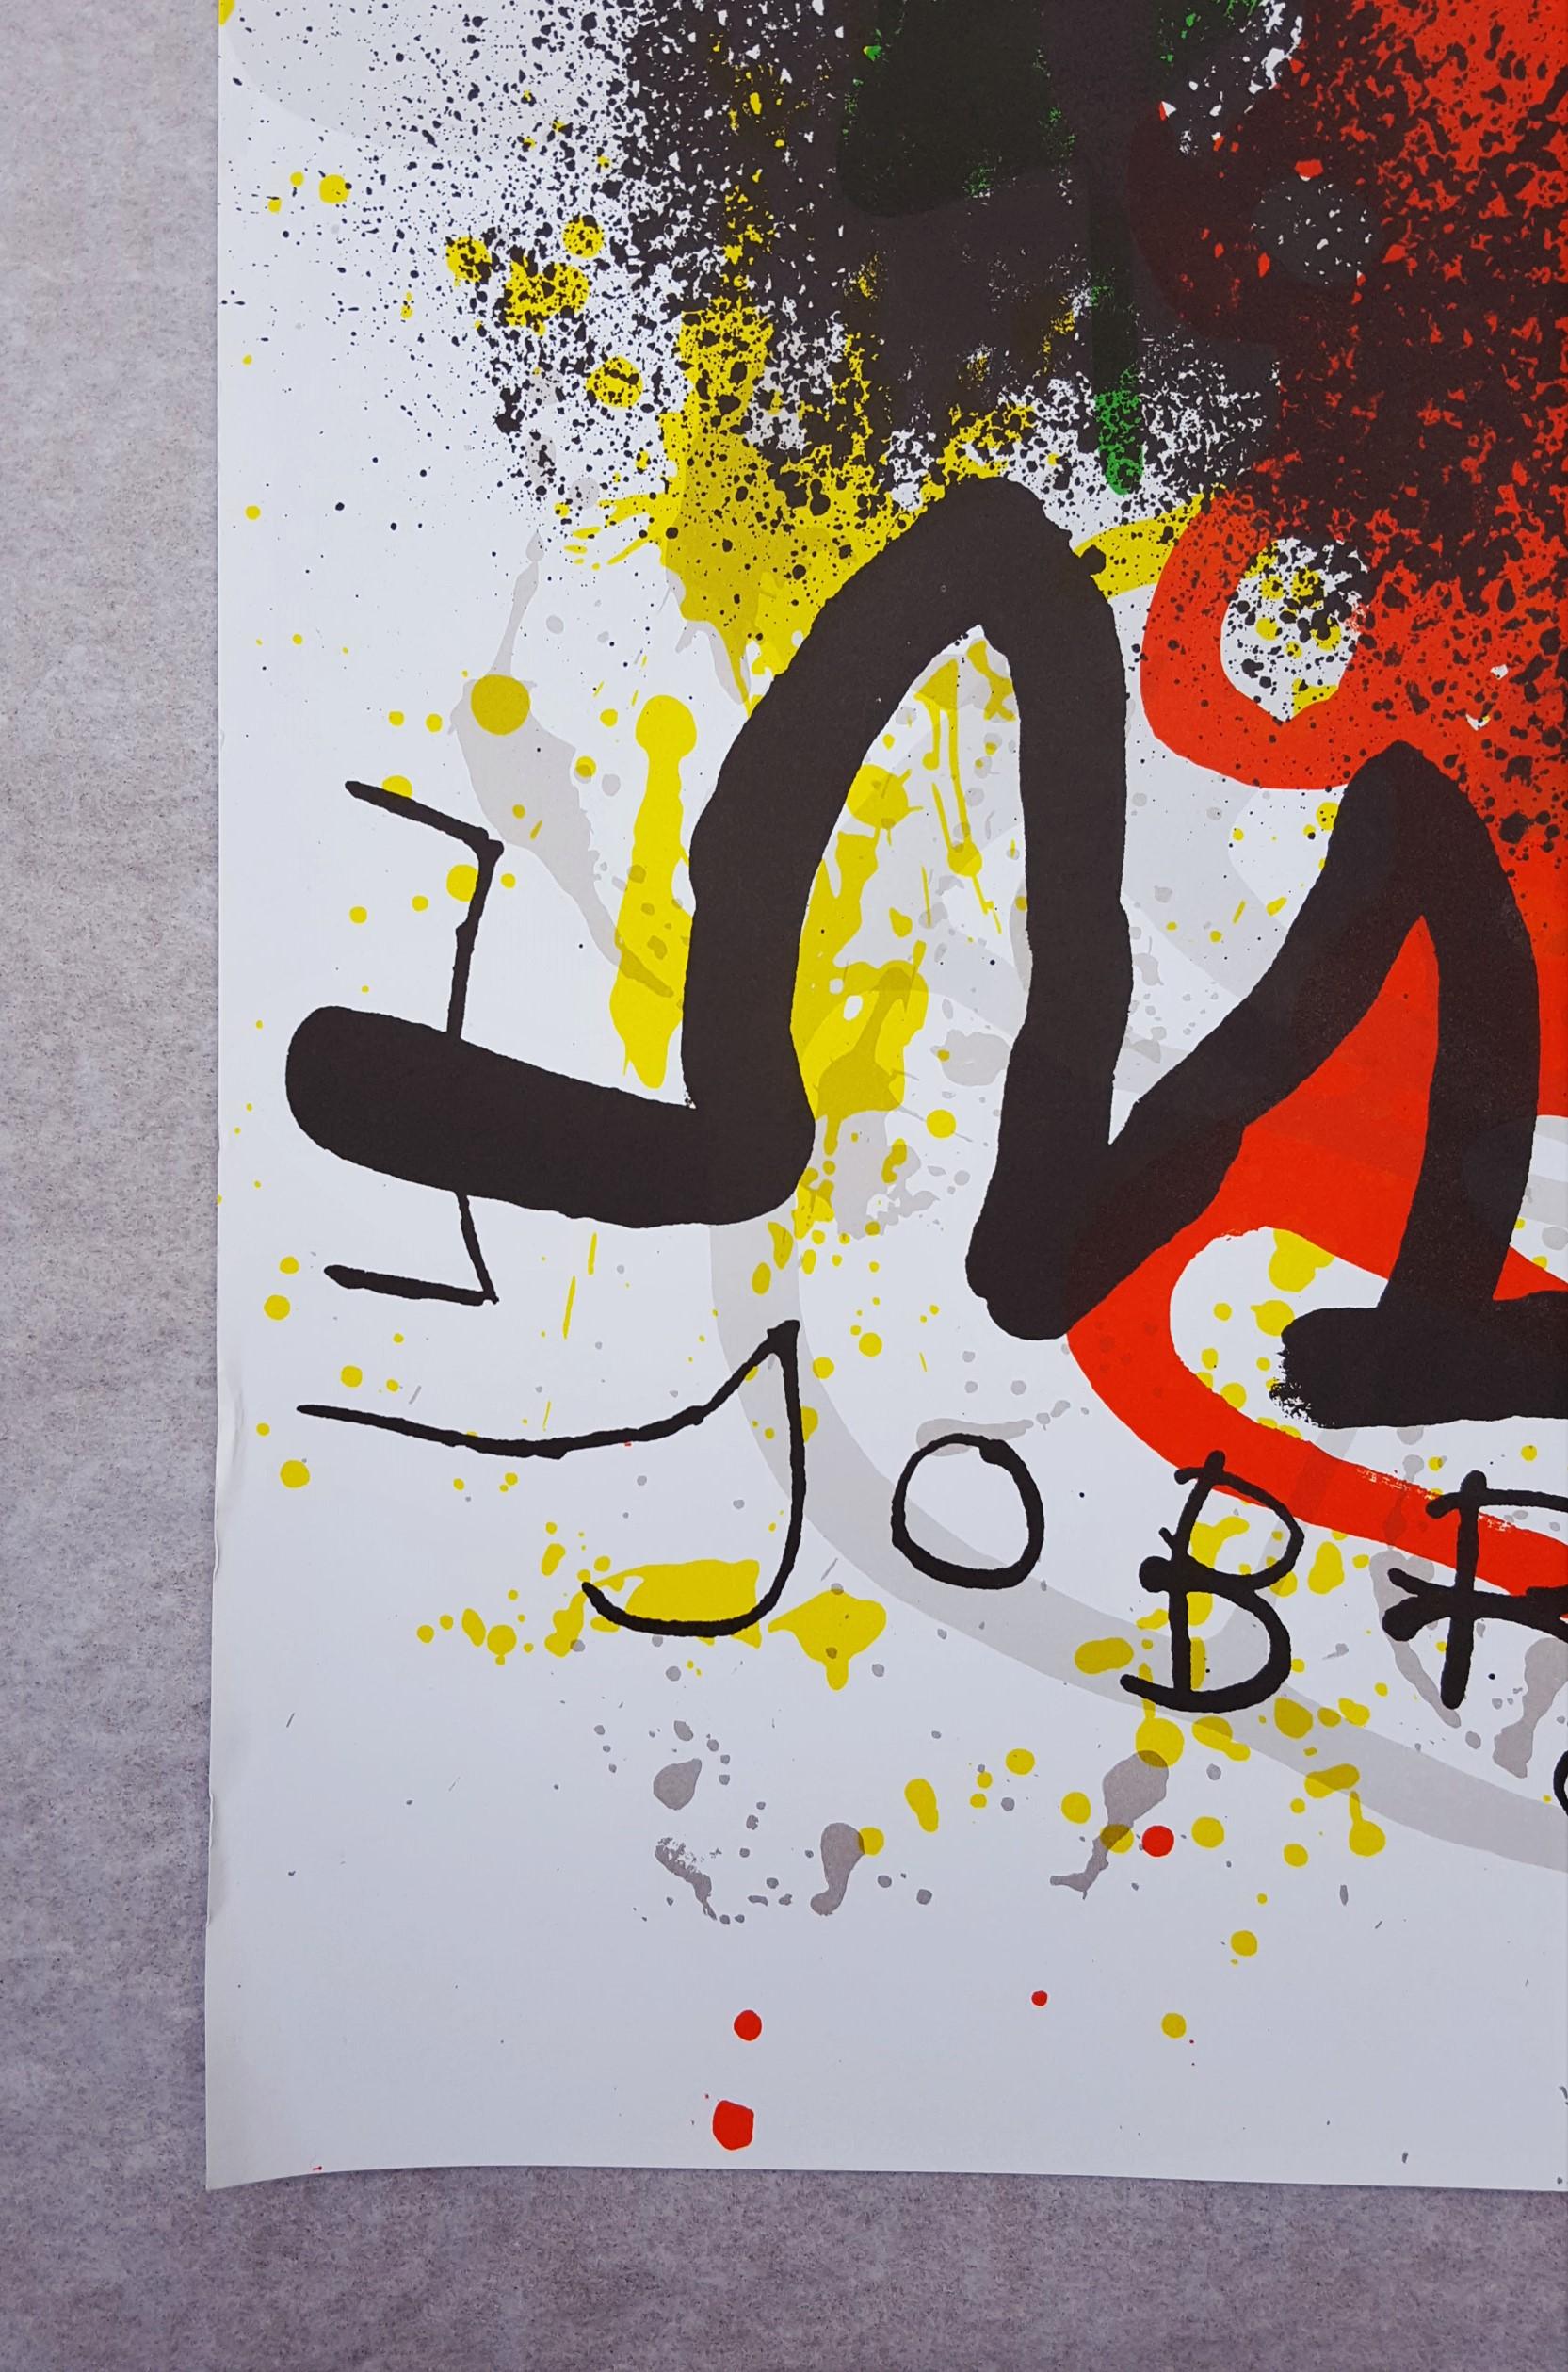 Sobreteixims - Print by Joan Miró